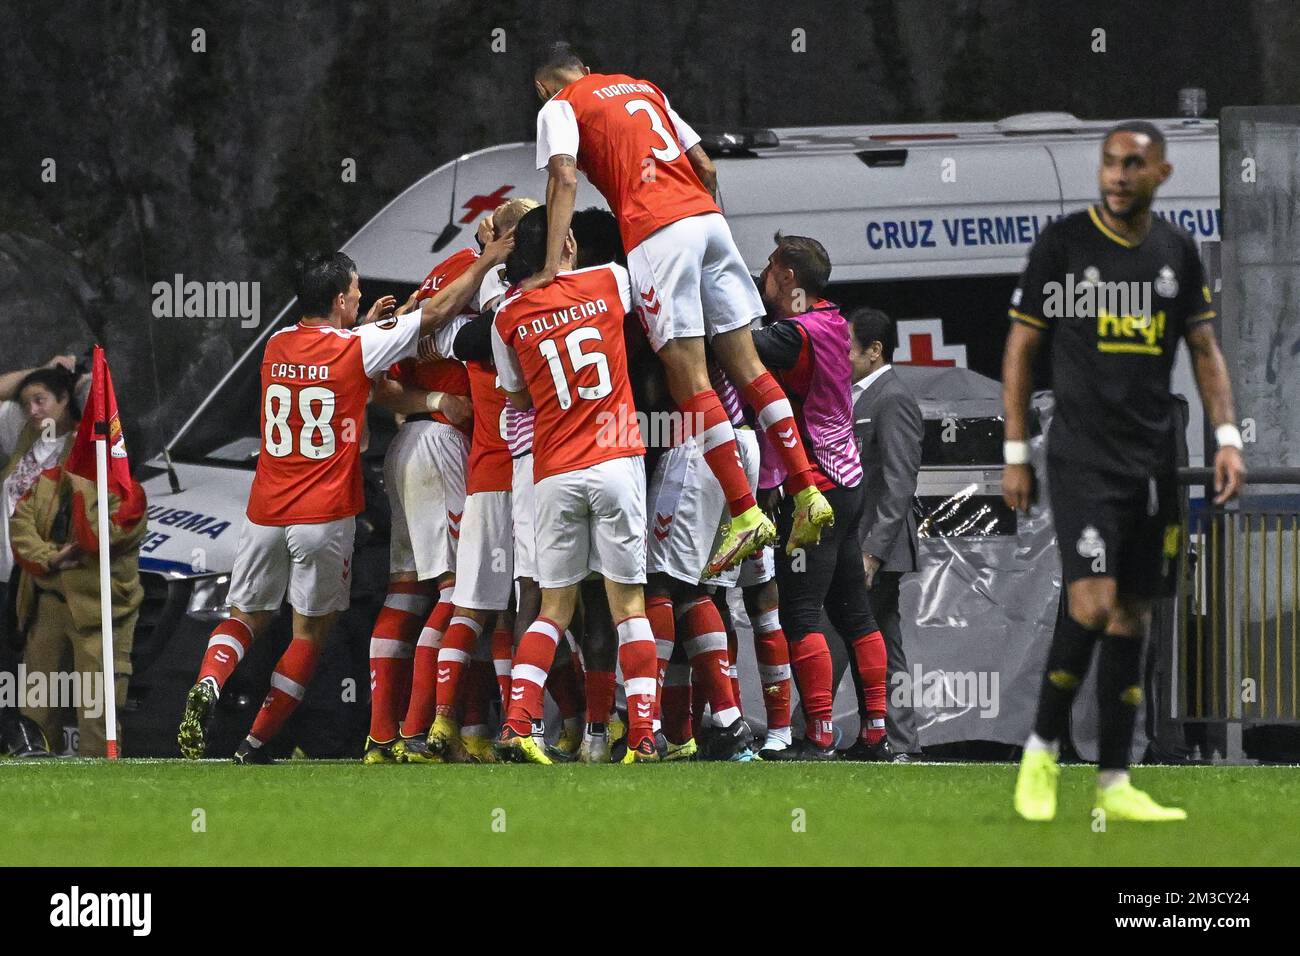 Los jugadores de Braga celebran después de anotar durante un partido entre  el club portugués SC Braga y el equipo belga de fútbol Royale Union  Saint-Gilloise, el jueves 06 de octubre de